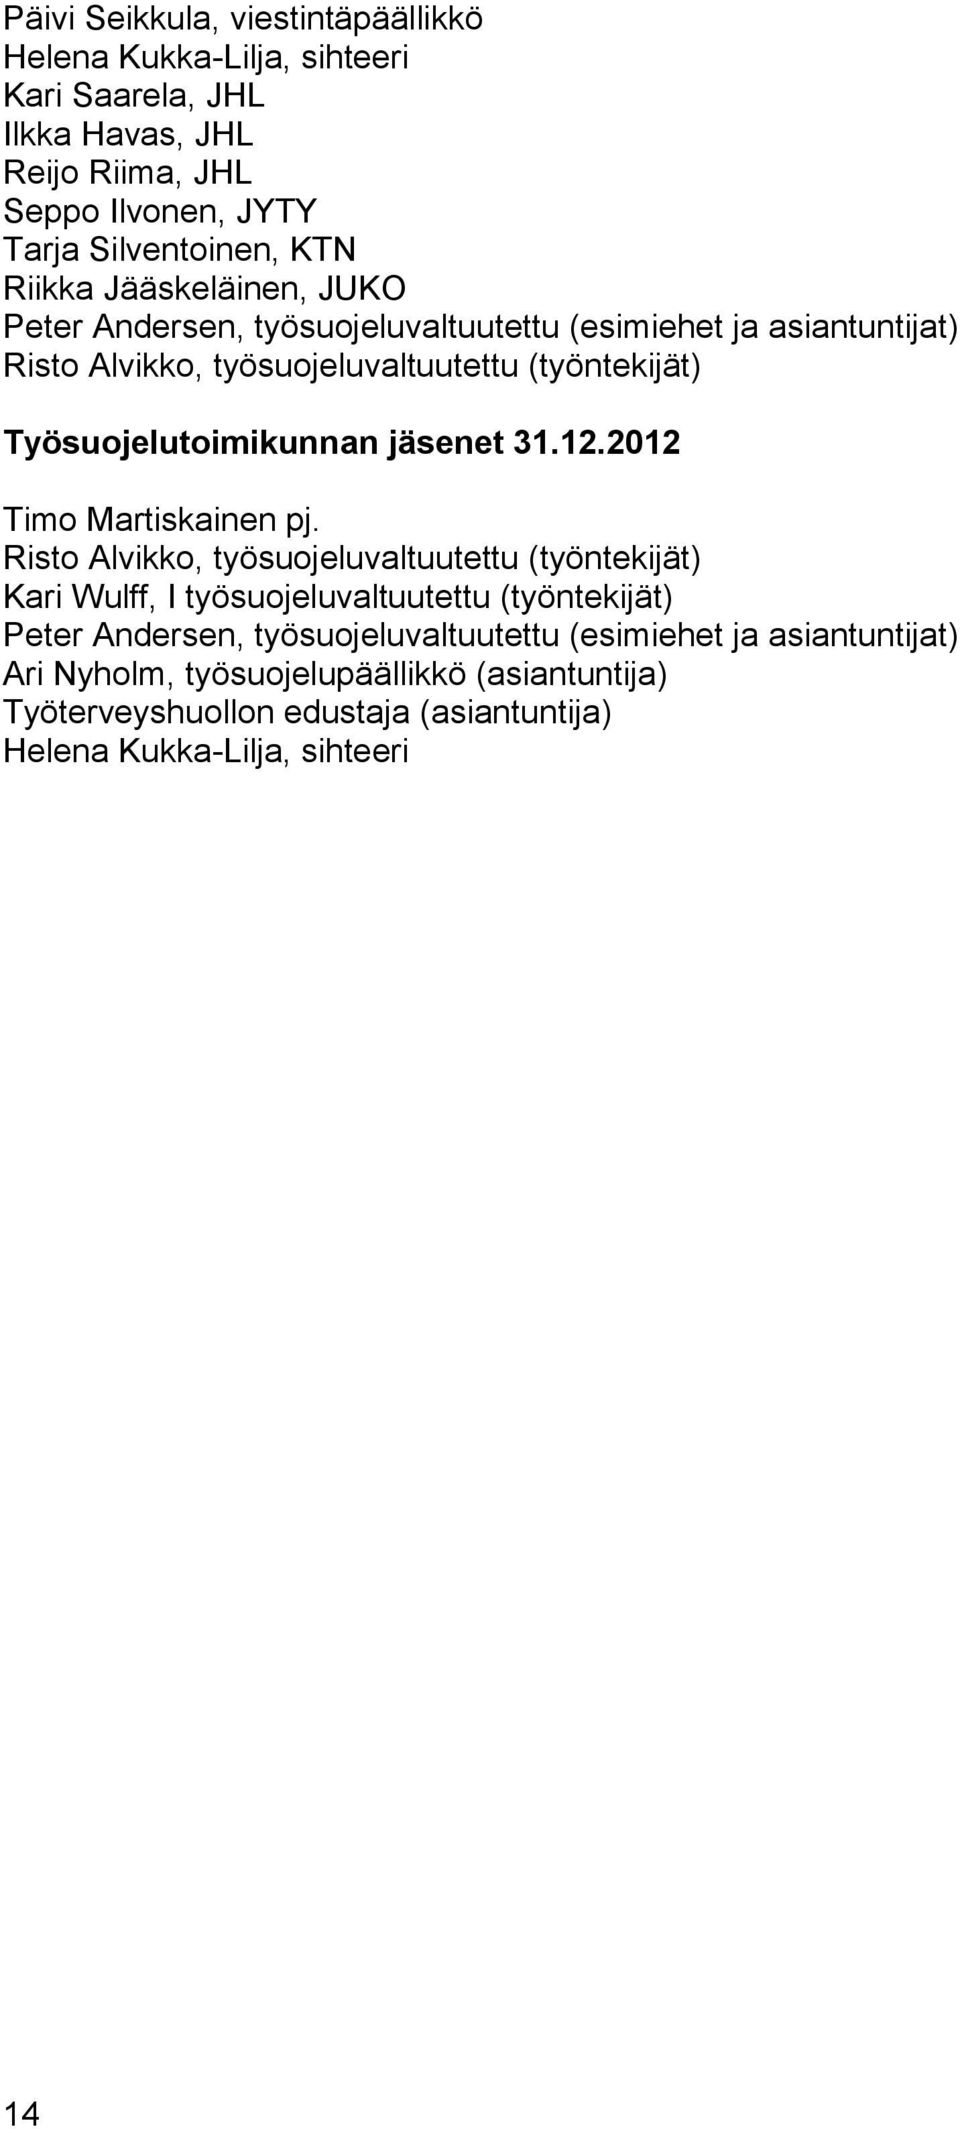 Työsuojelutoimikunnan jäsenet 31.12.2012 Timo Martiskainen pj.